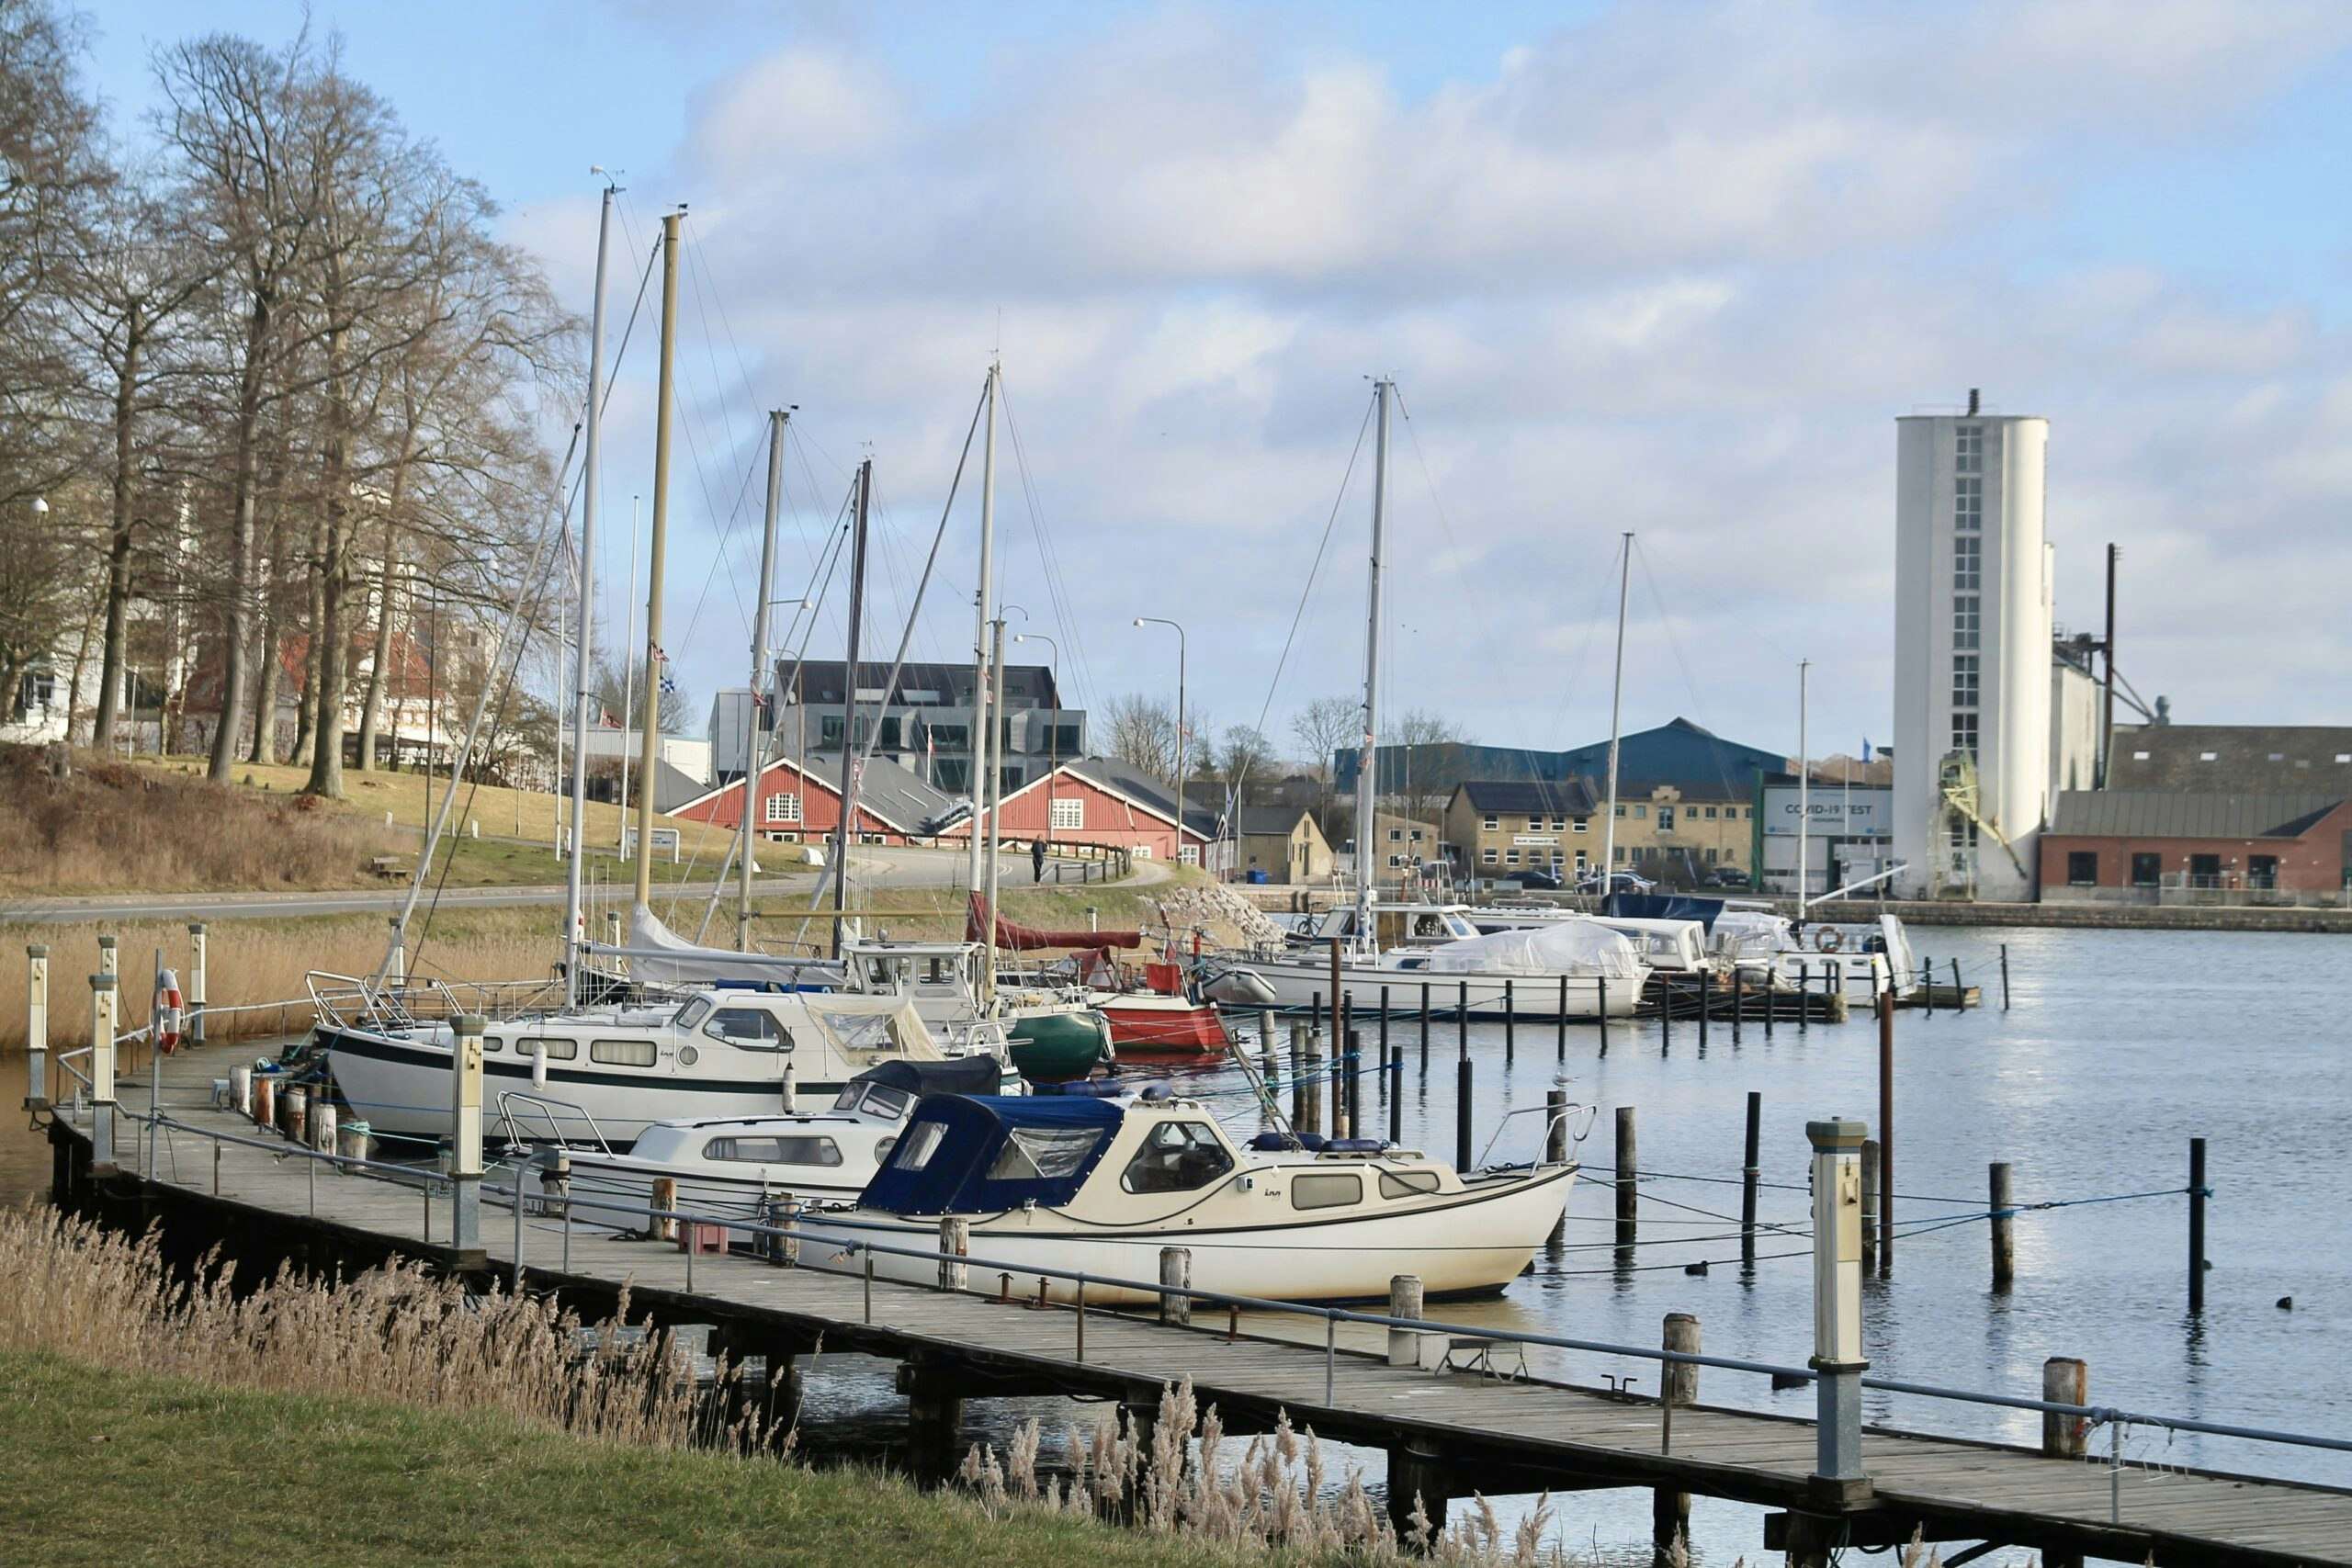 Sejl og motorbådsklubben In Odense